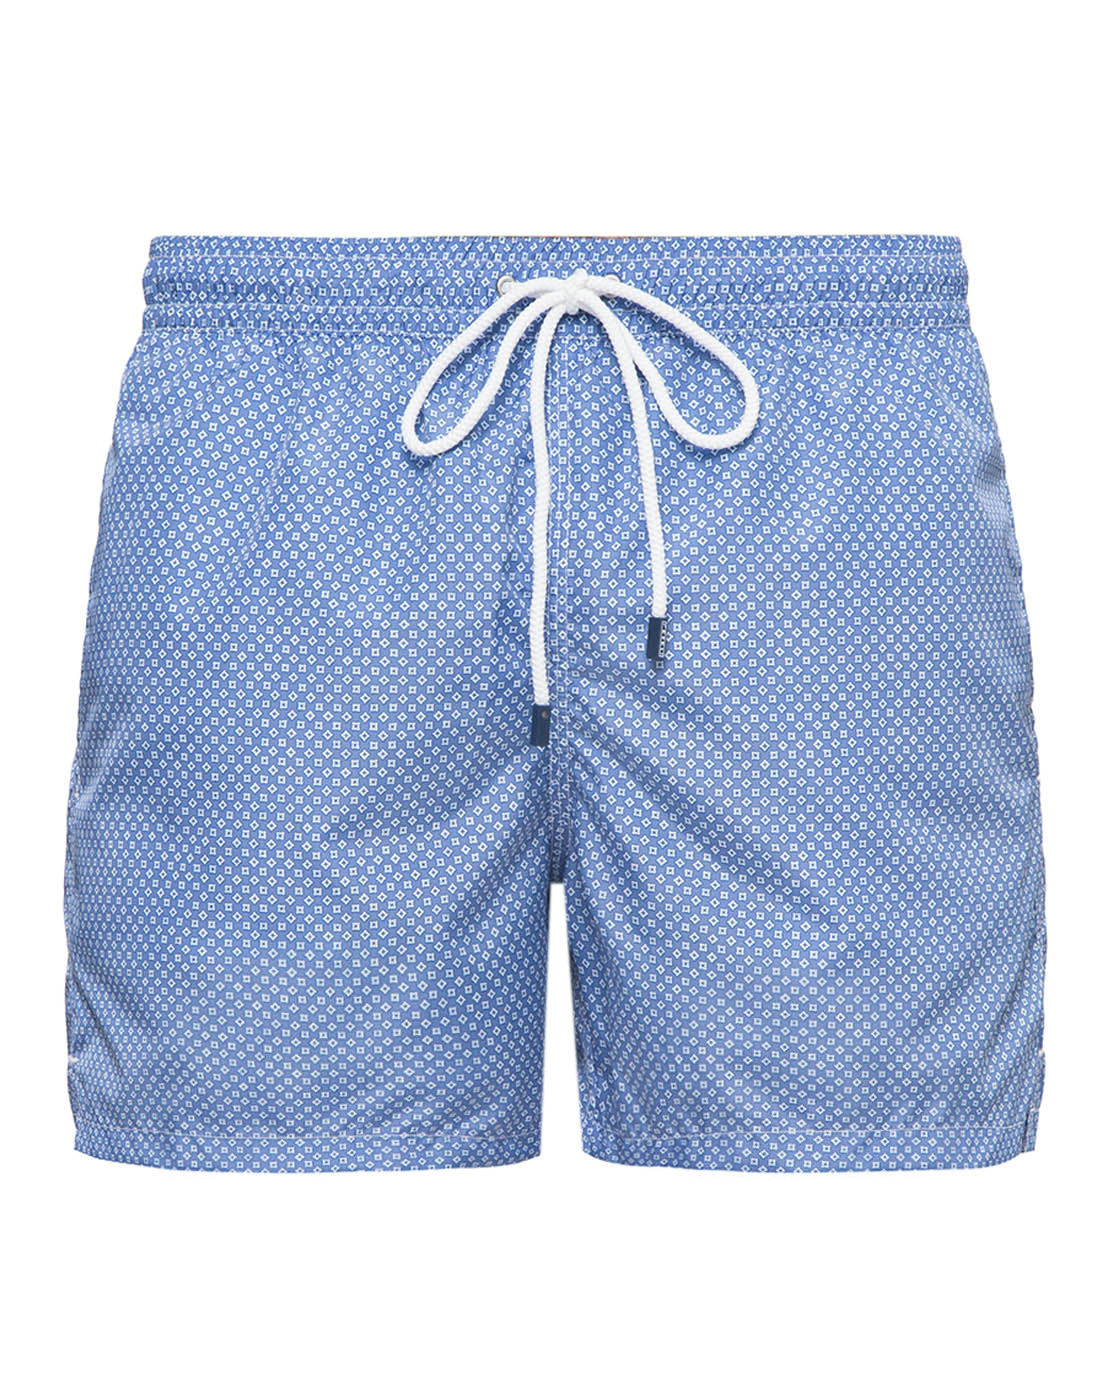 Мужские голубые шорты для плавания с принтом Fedeli S3UE00318/B8200/10-1